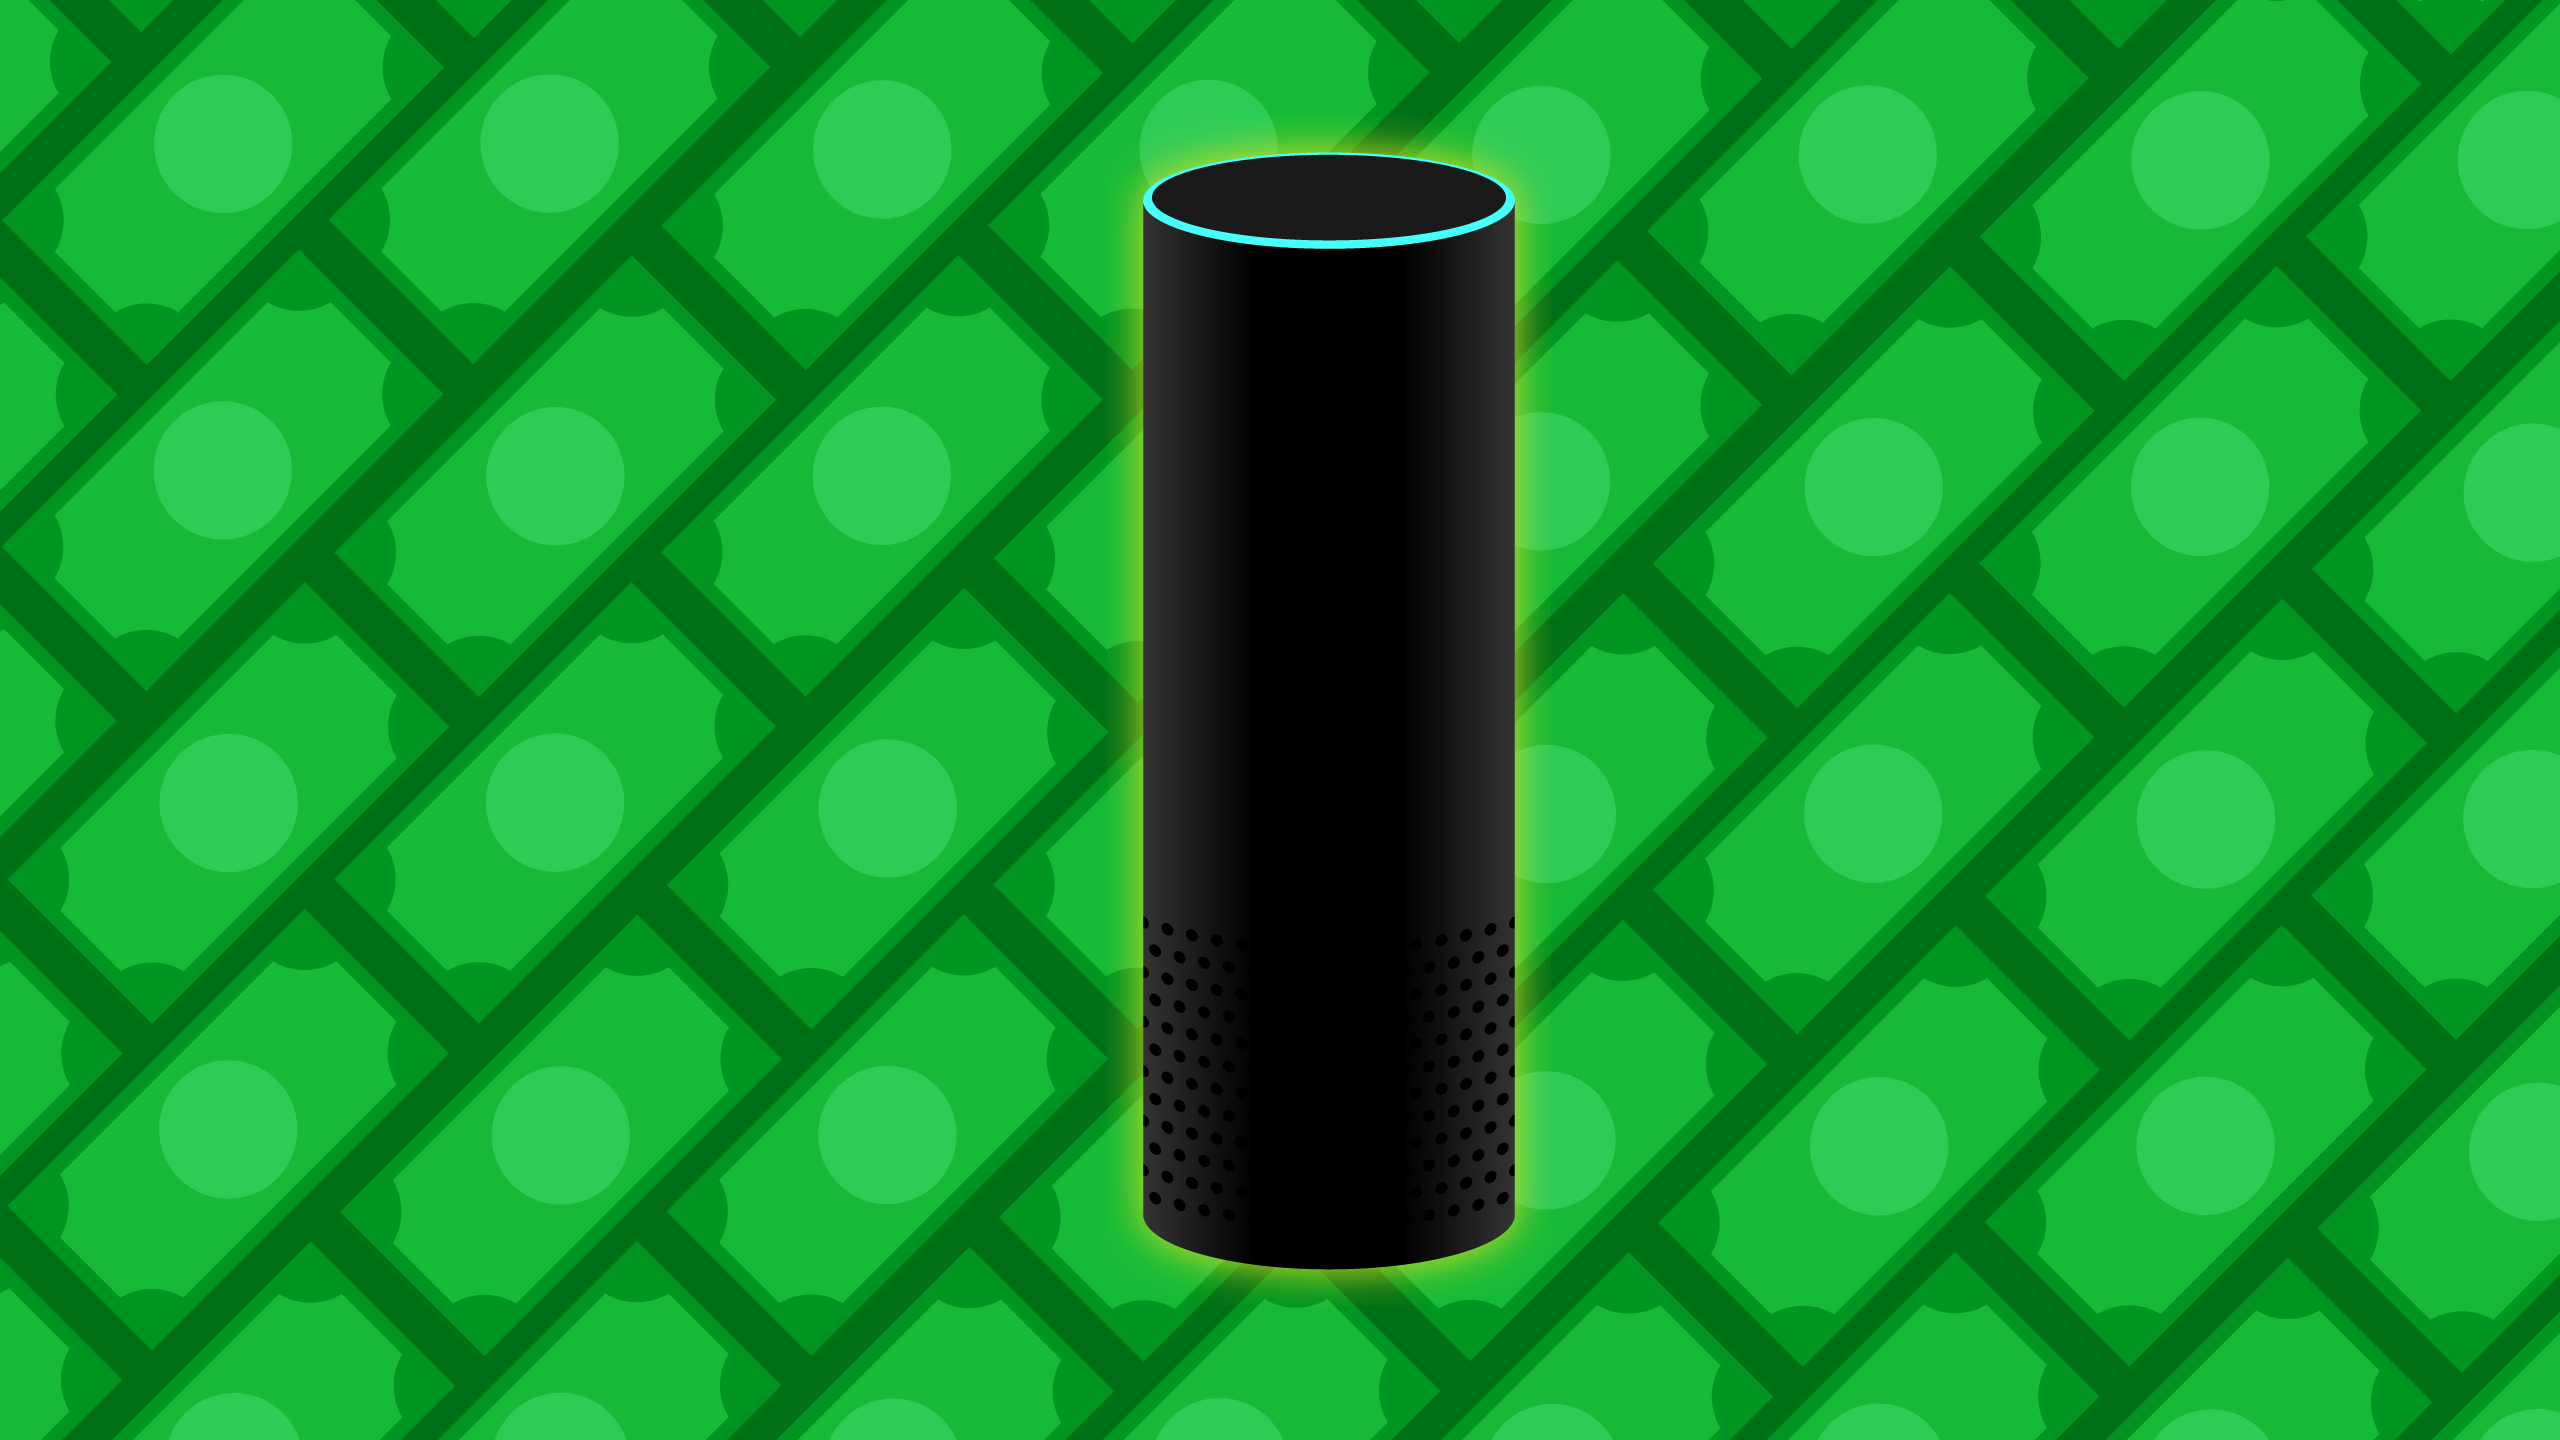 Amazon'un sesli asistanı Alexa, hırsızlara engel olabilir